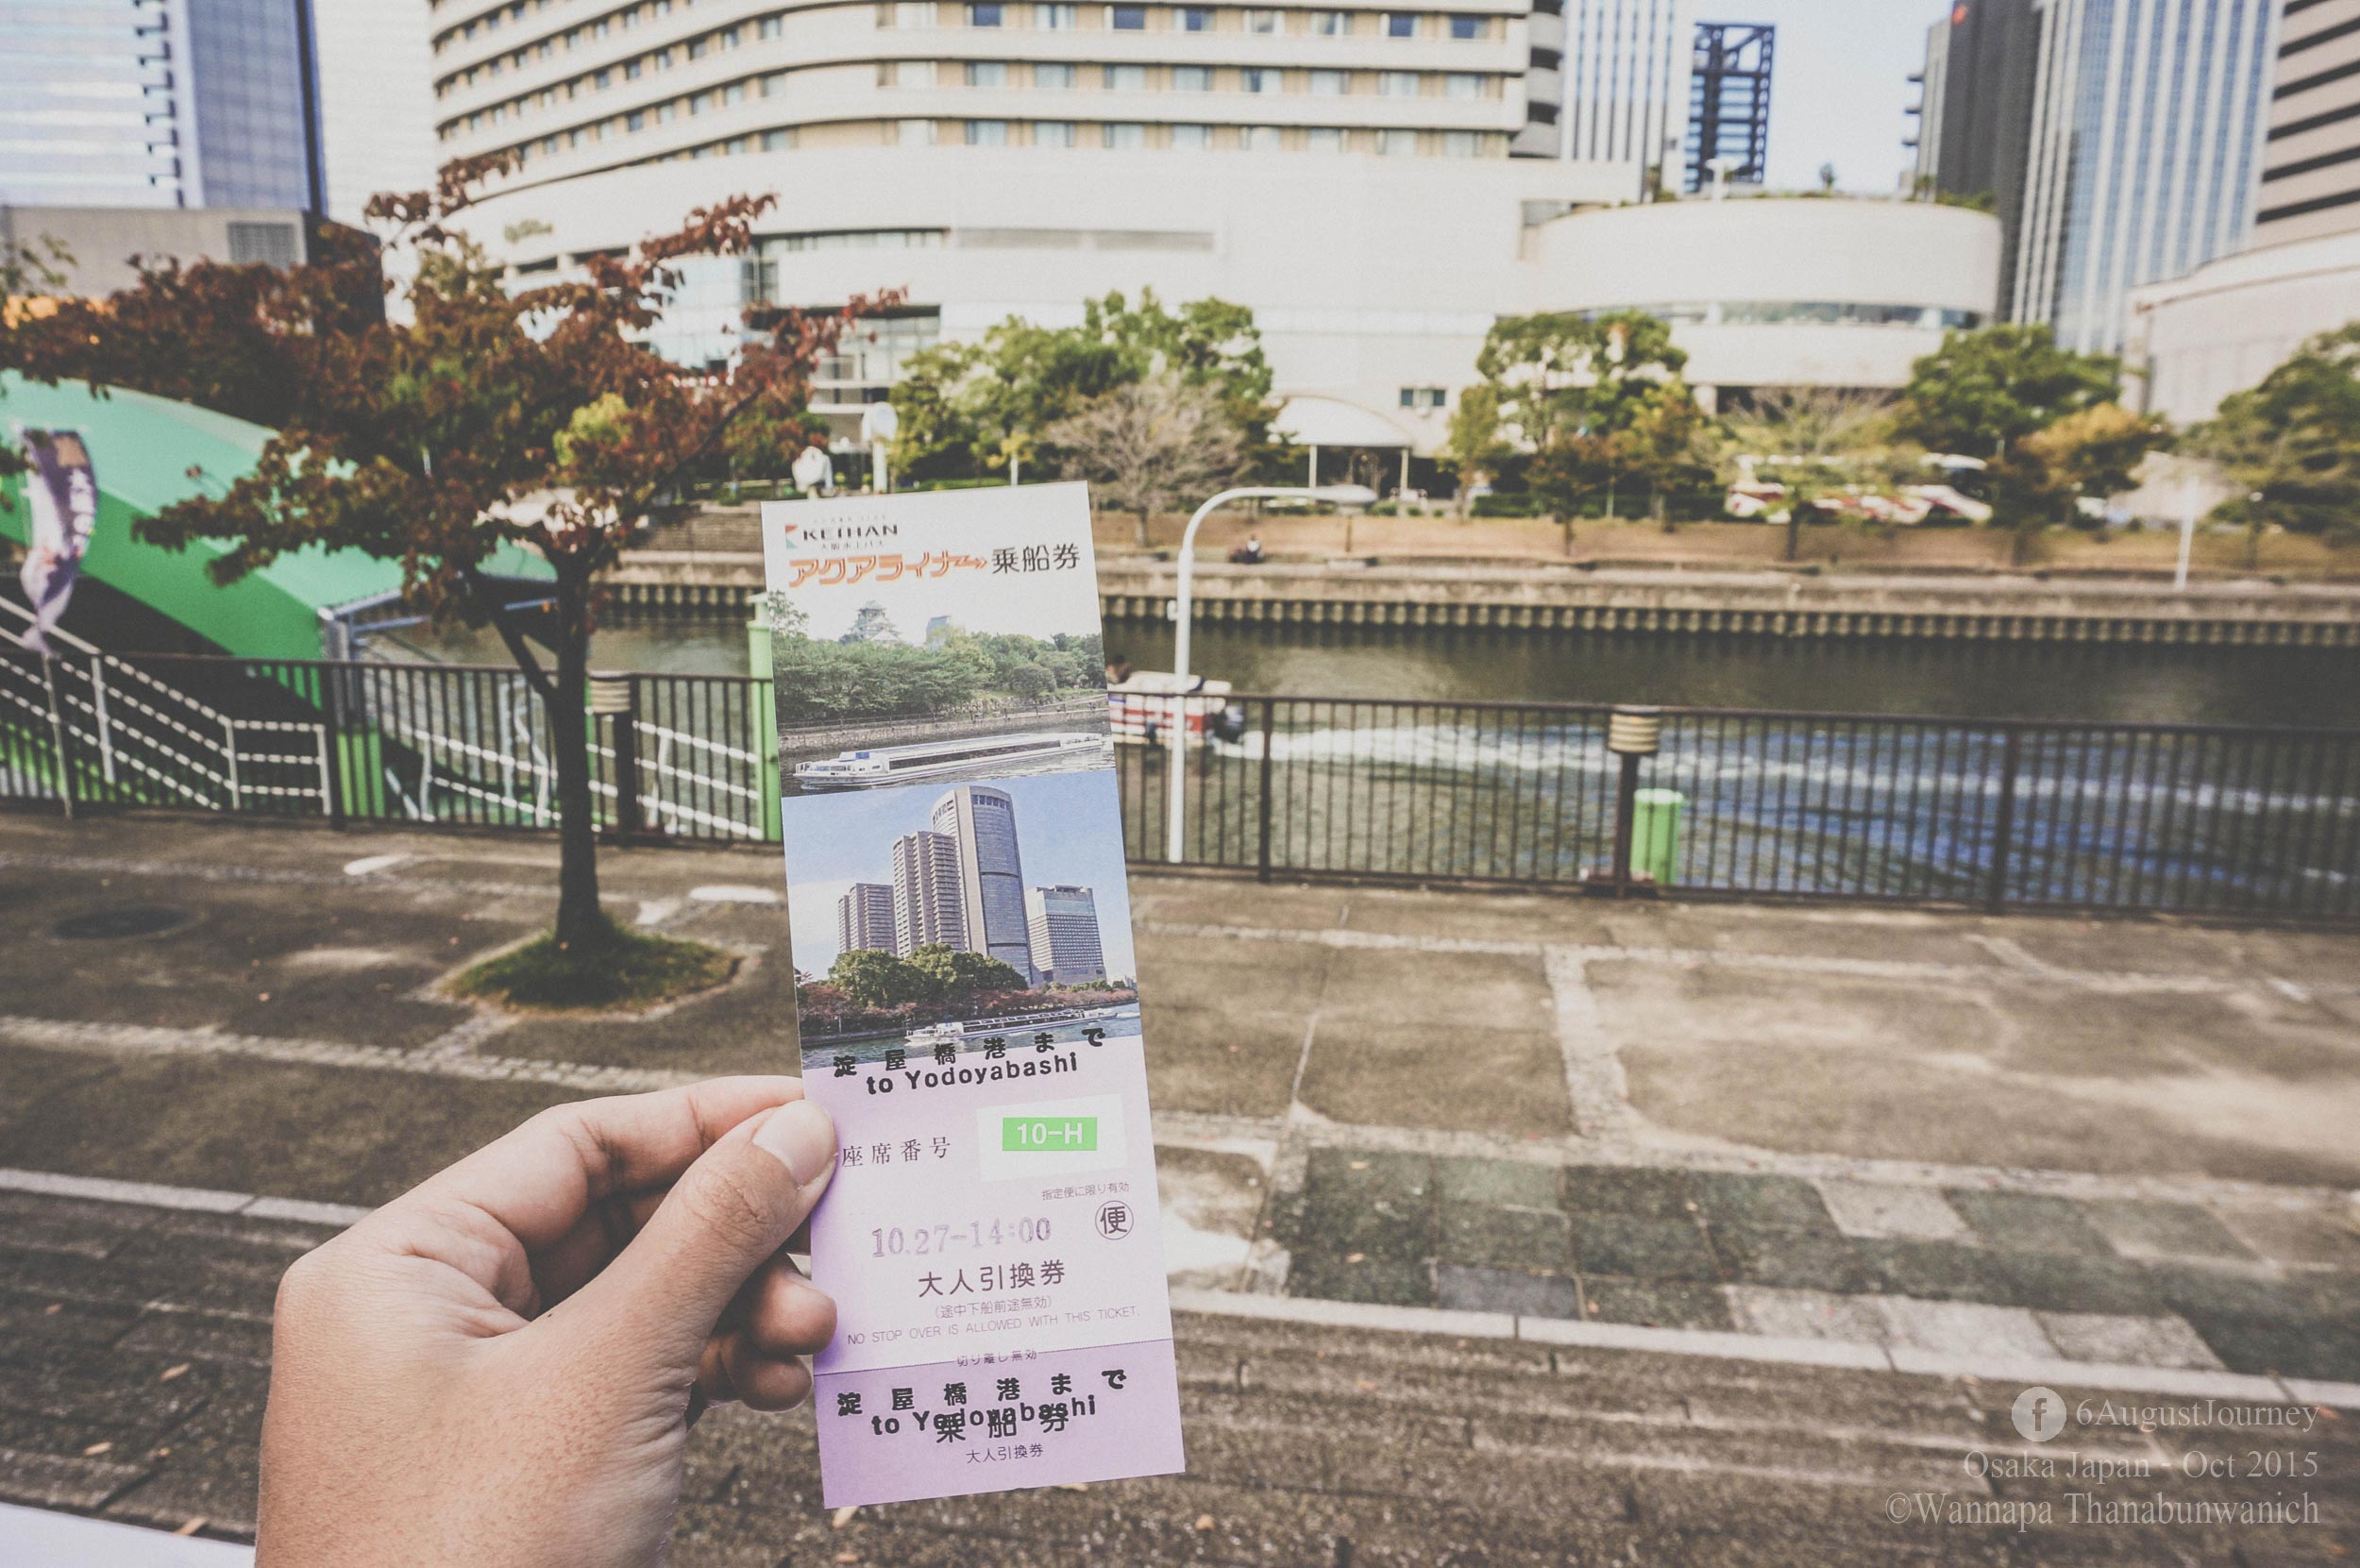 บัตรที่ได้สามารถใช้ Osaka Amazing Pass ลดราคาได้ด้วยค่ะ (ฟรีช่วง ธันวาคม - กุมพาพันธ์)